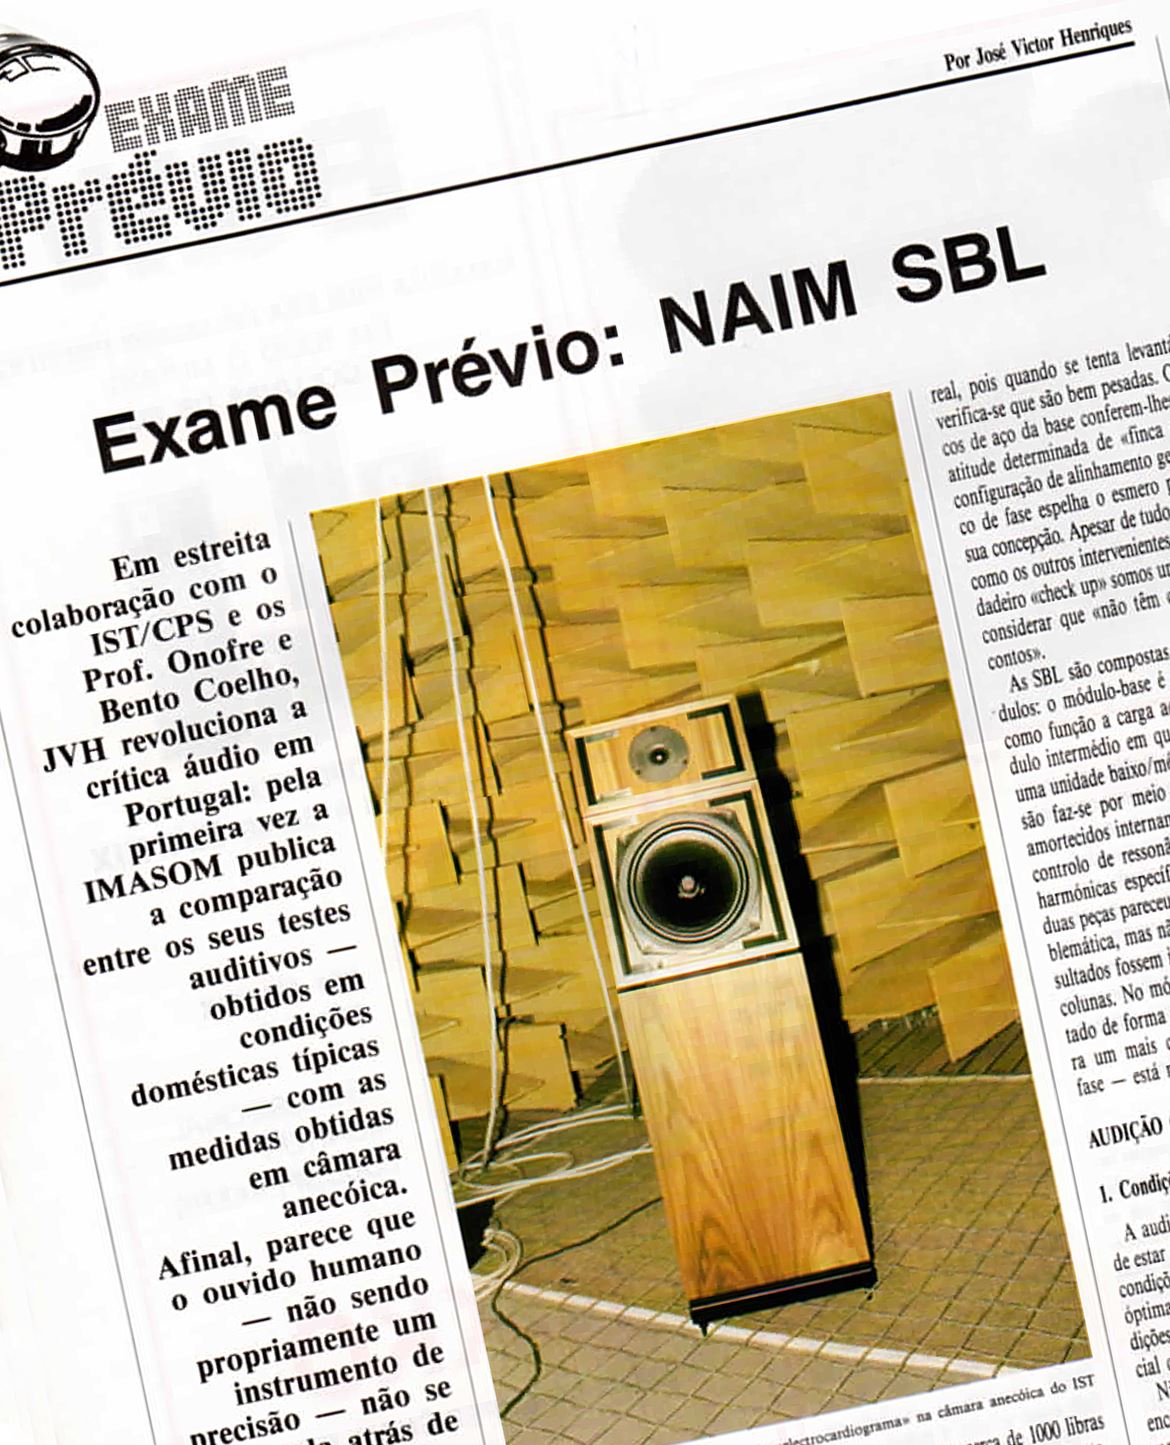 Exame prévio: NAIM SBL, publicado na edição de Agosto 1988, da revista IMASOM. Abrir pdf integral no final do artigo.